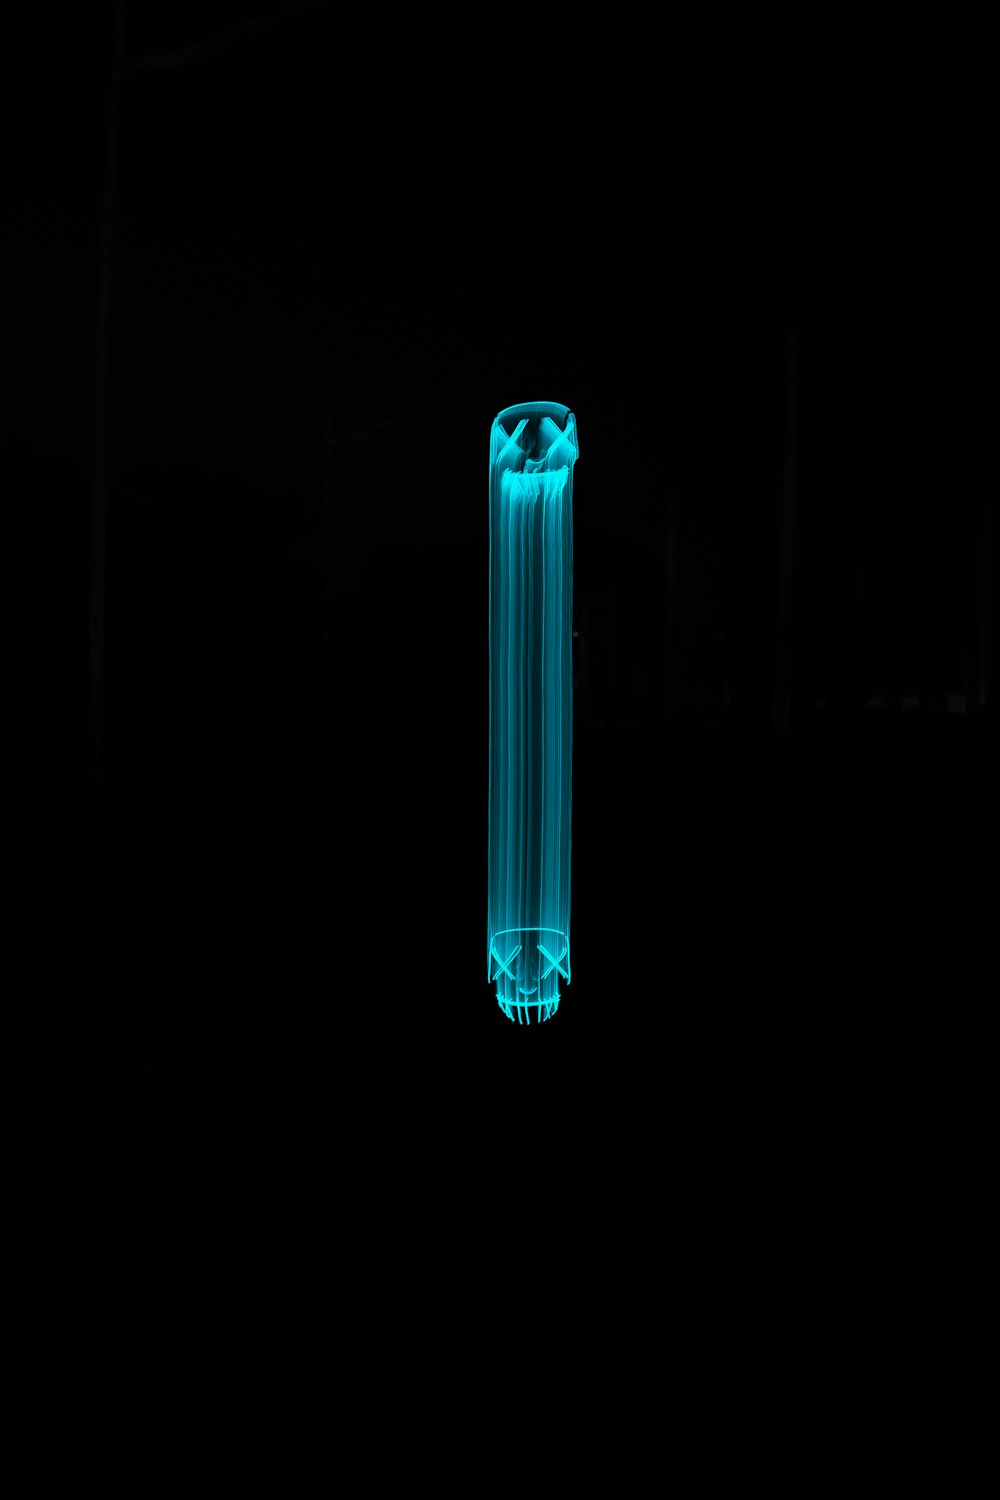 Eine blaue Röhre leuchtet im Dunkeln